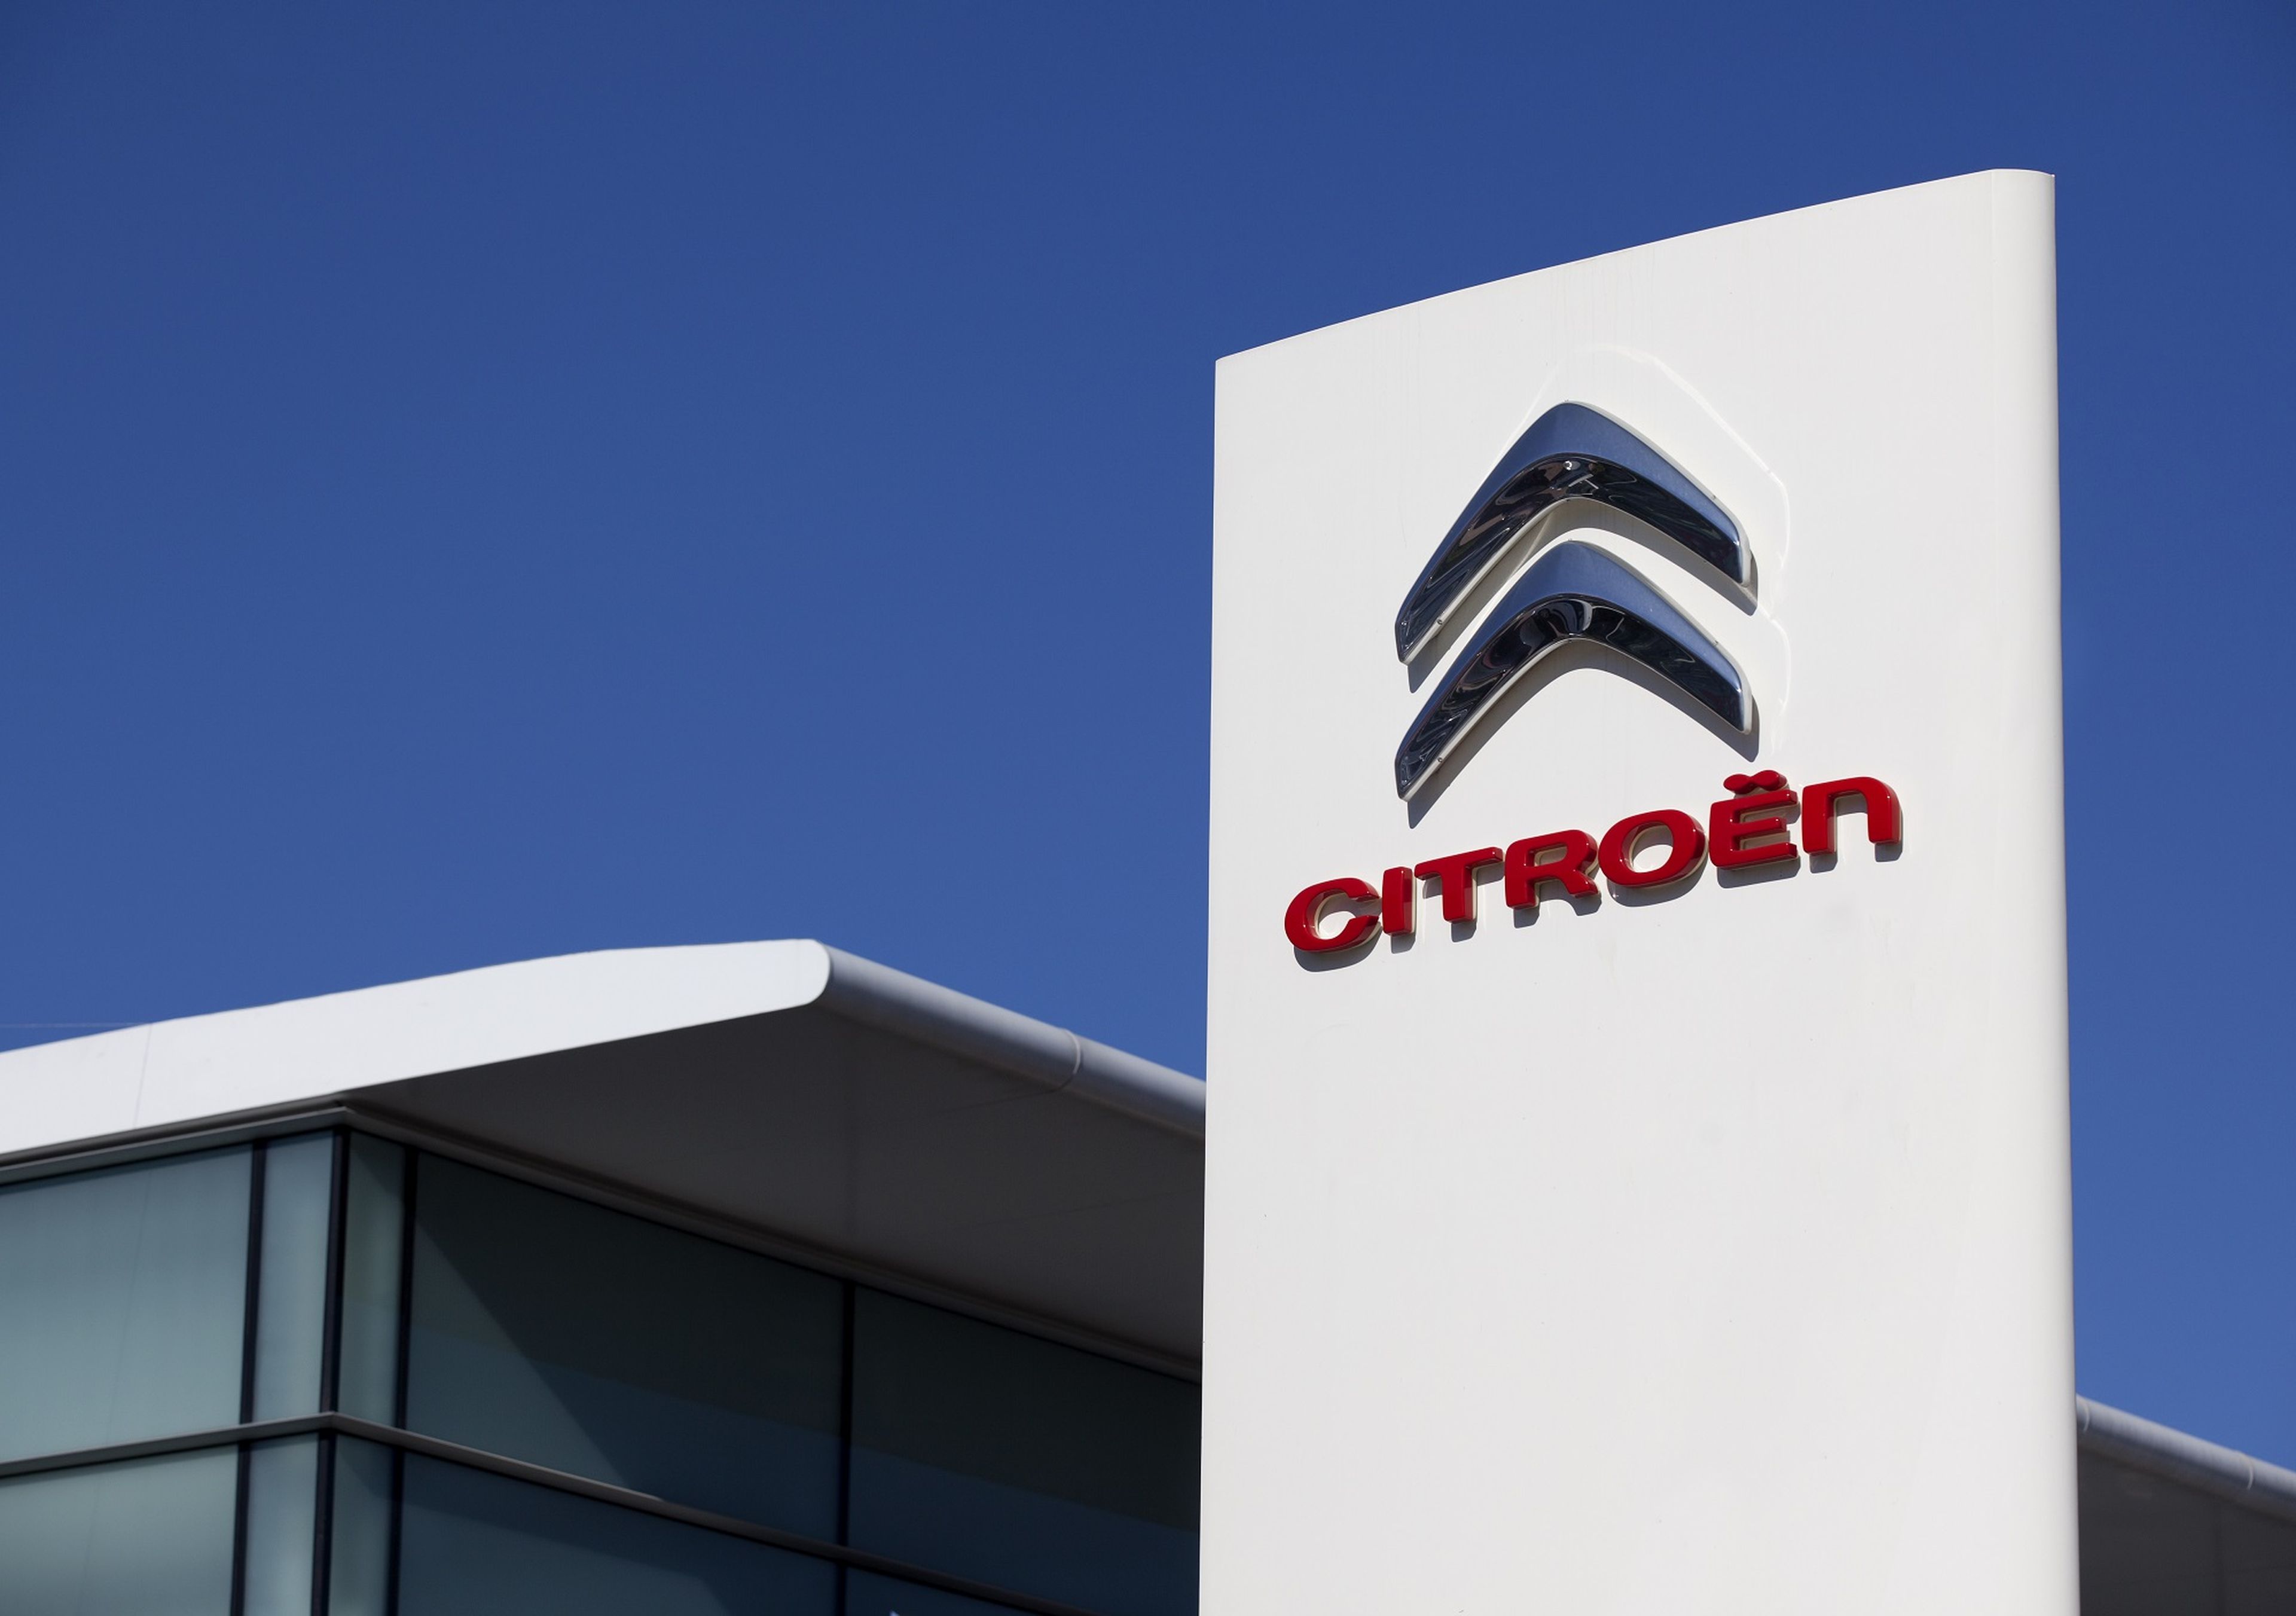 El logo de Citroën.